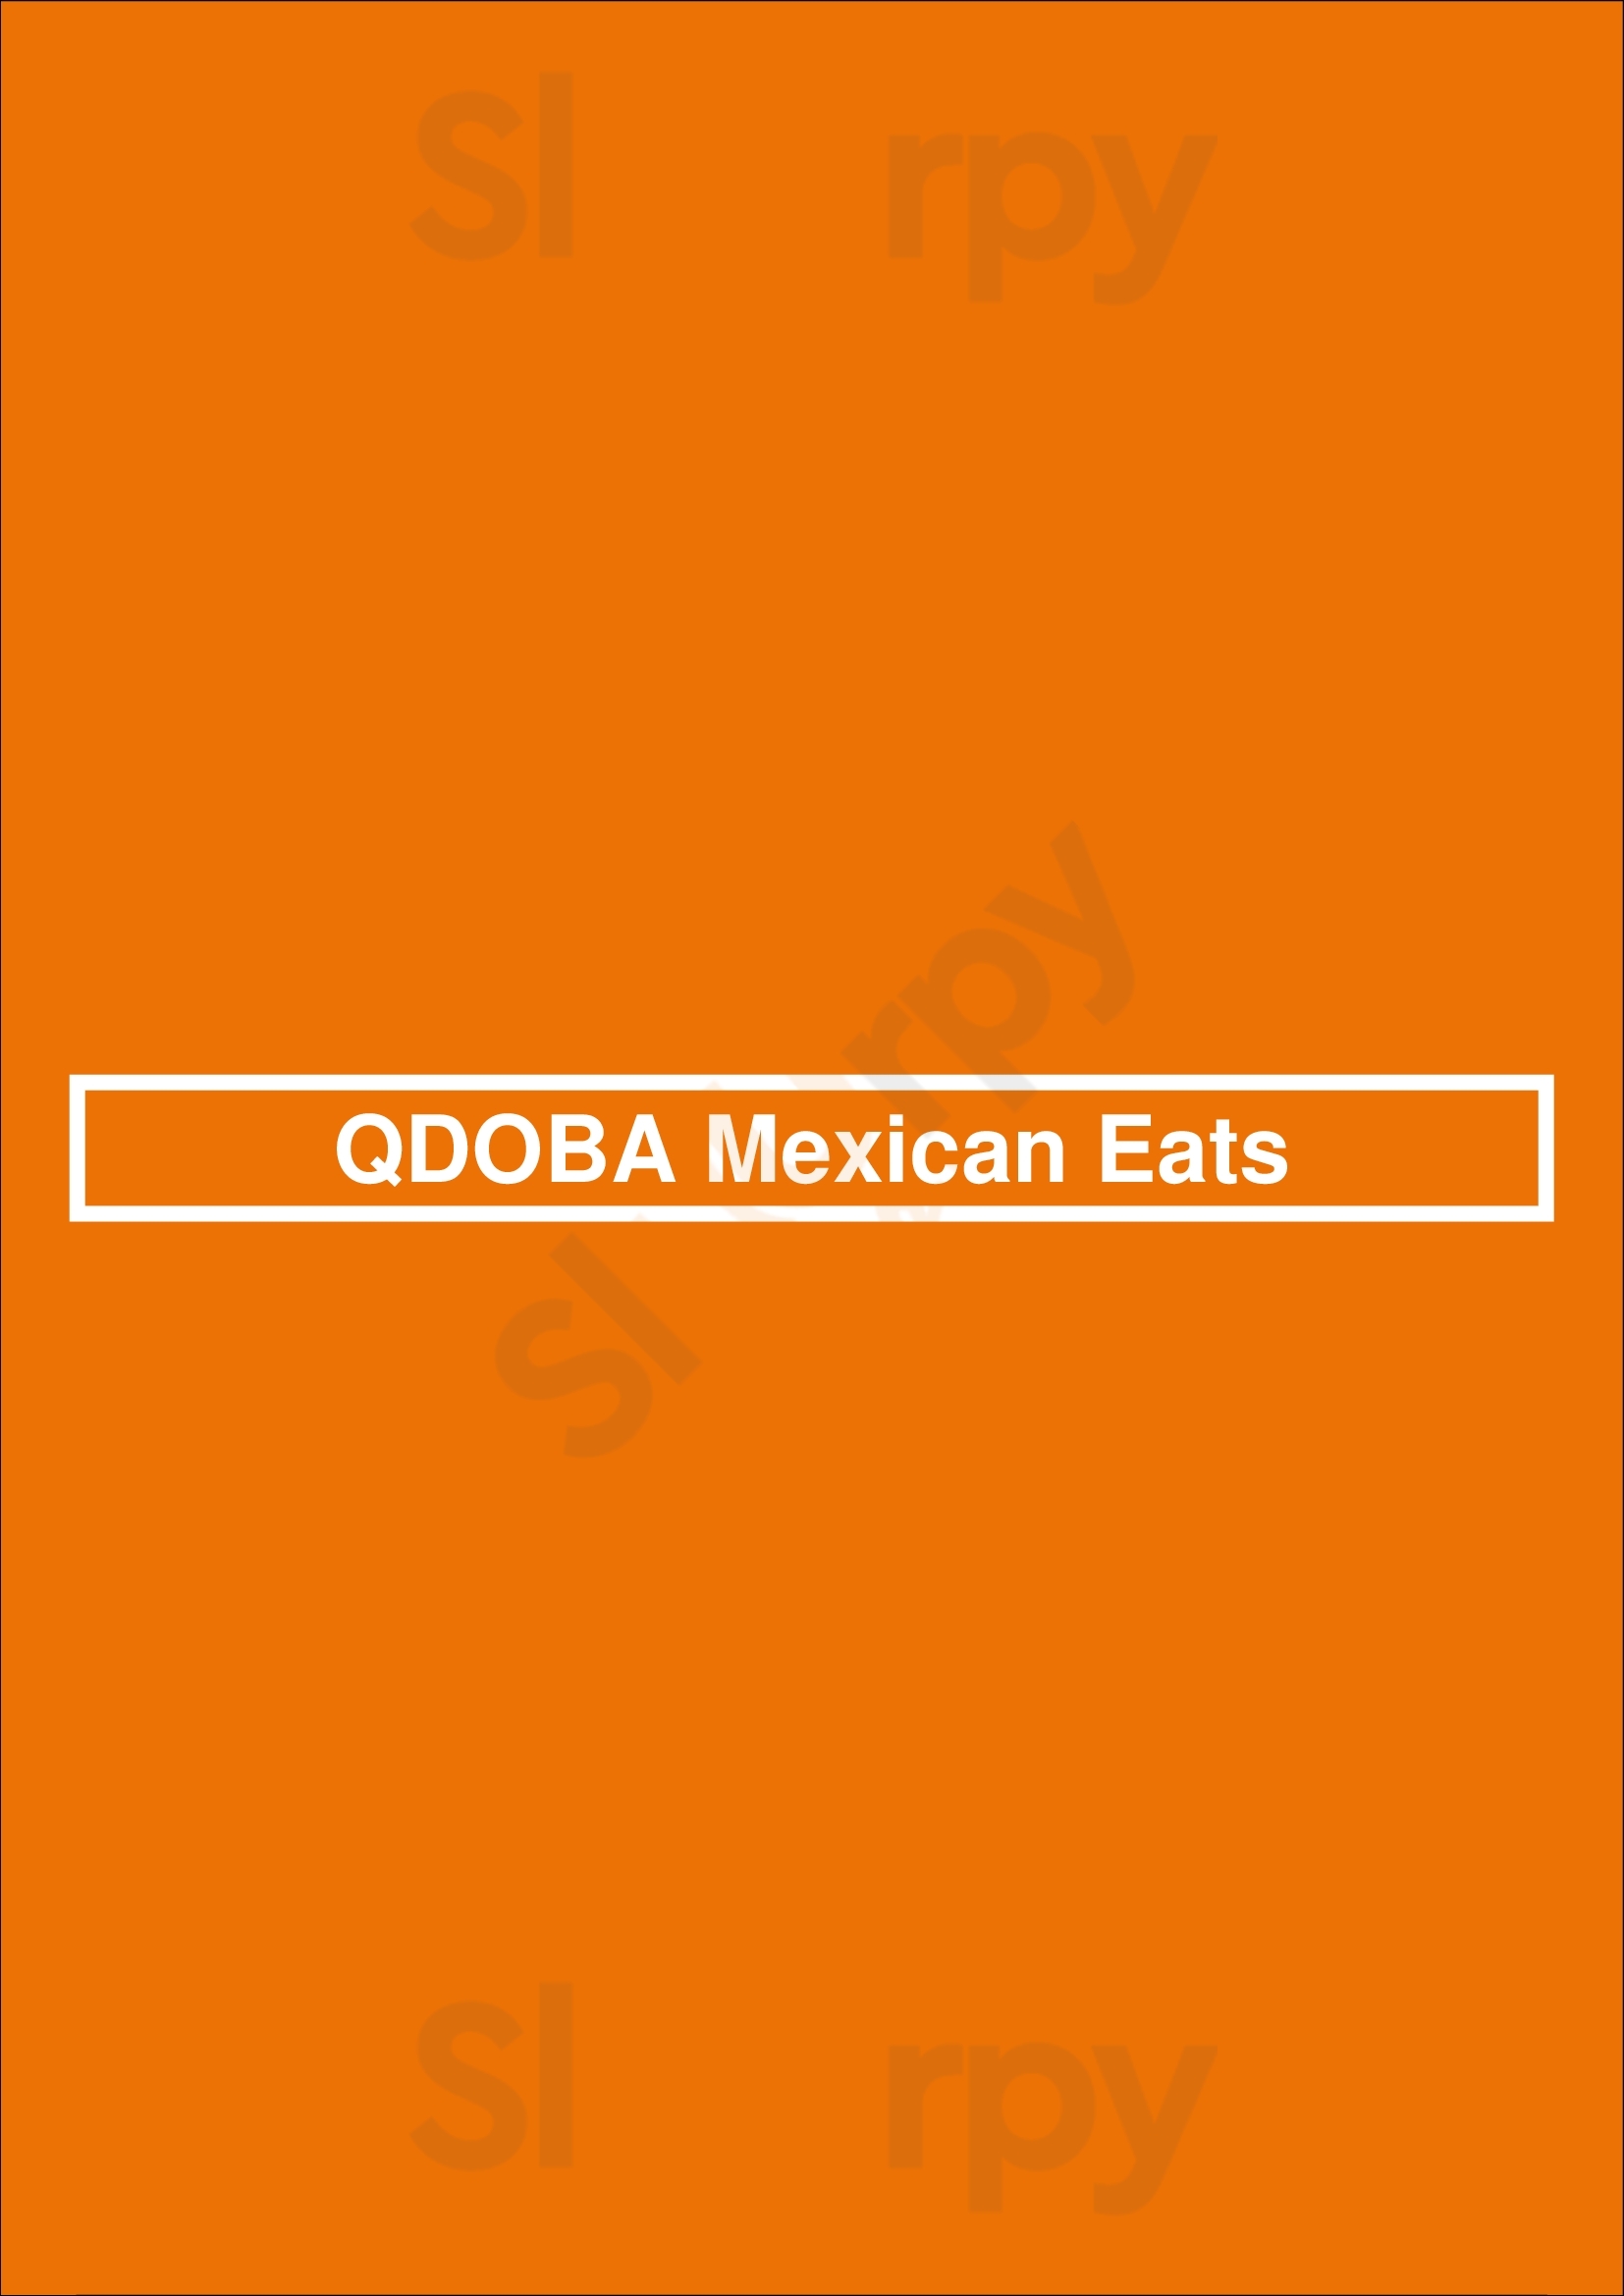 Qdoba Mexican Eats Denver Menu - 1